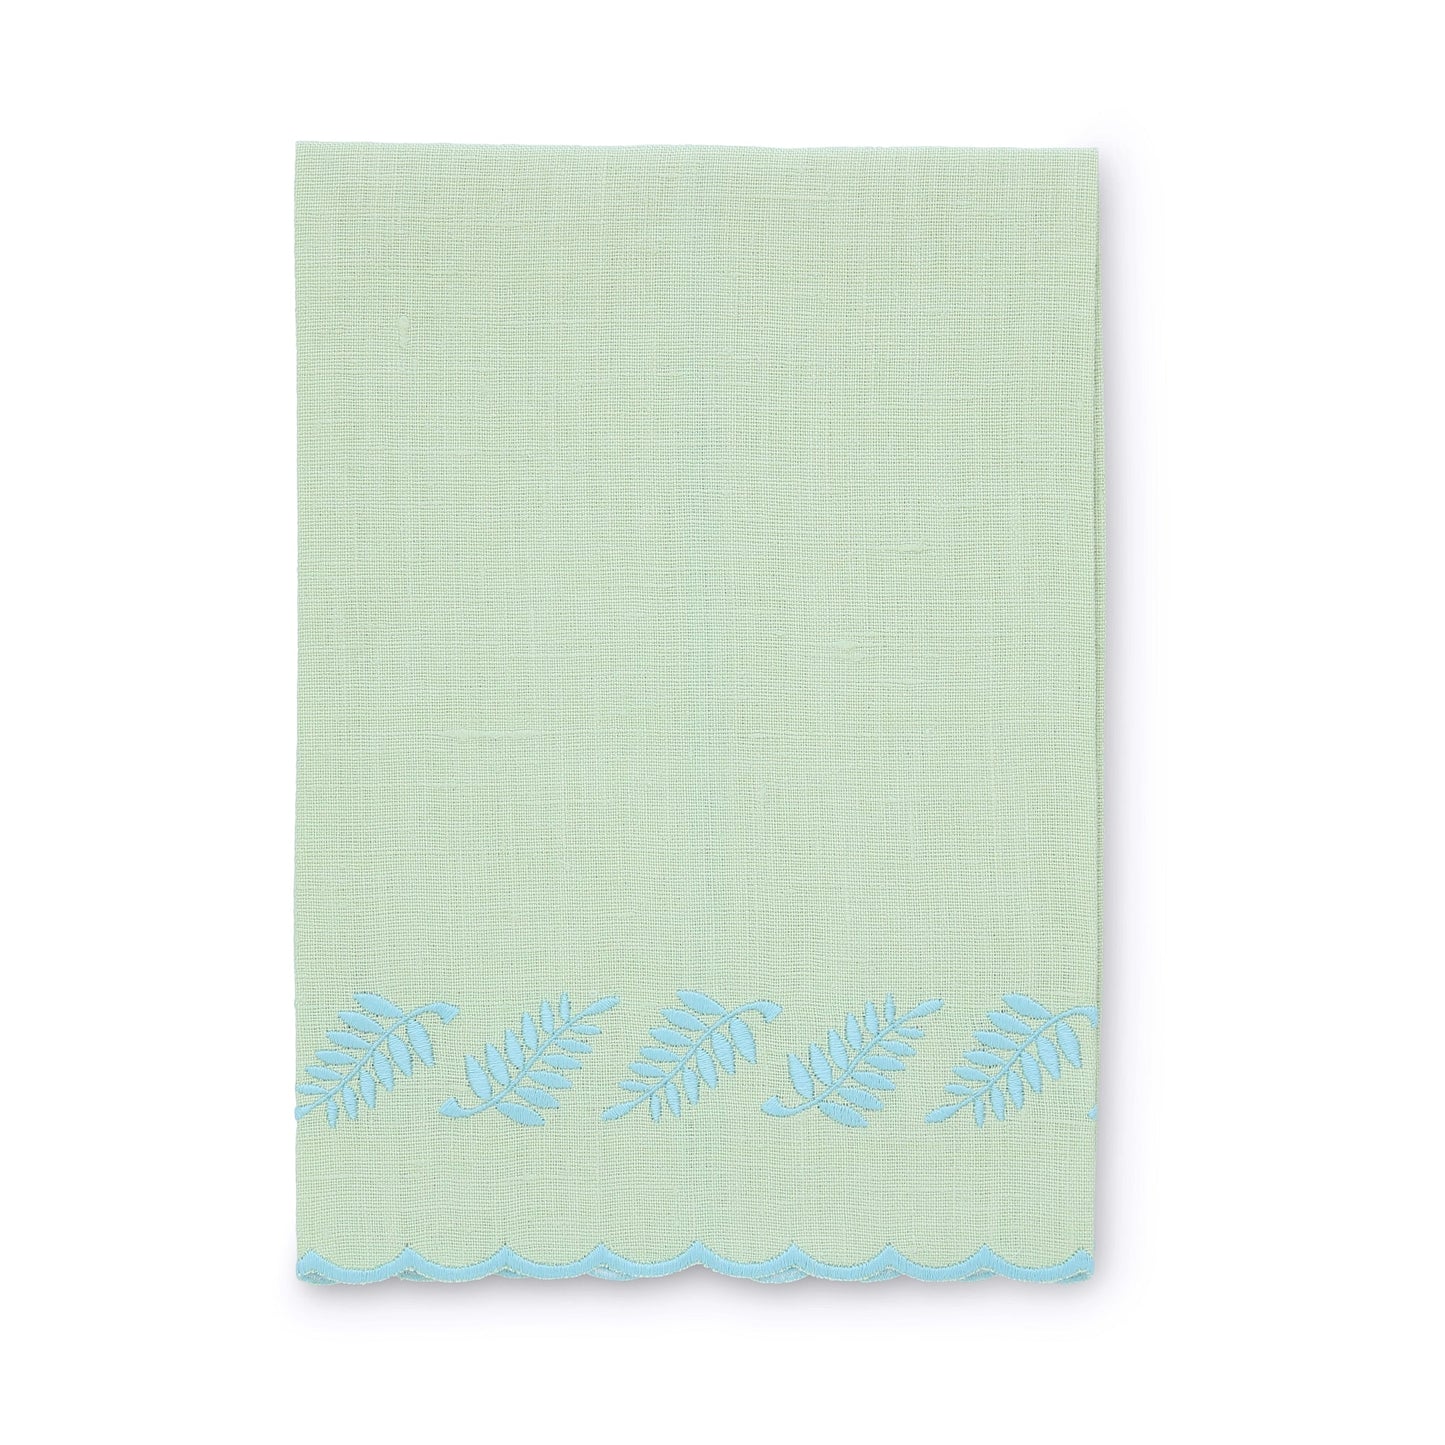 Kiwi / Blue Fern Scalloped Linen Guest Towel (each)